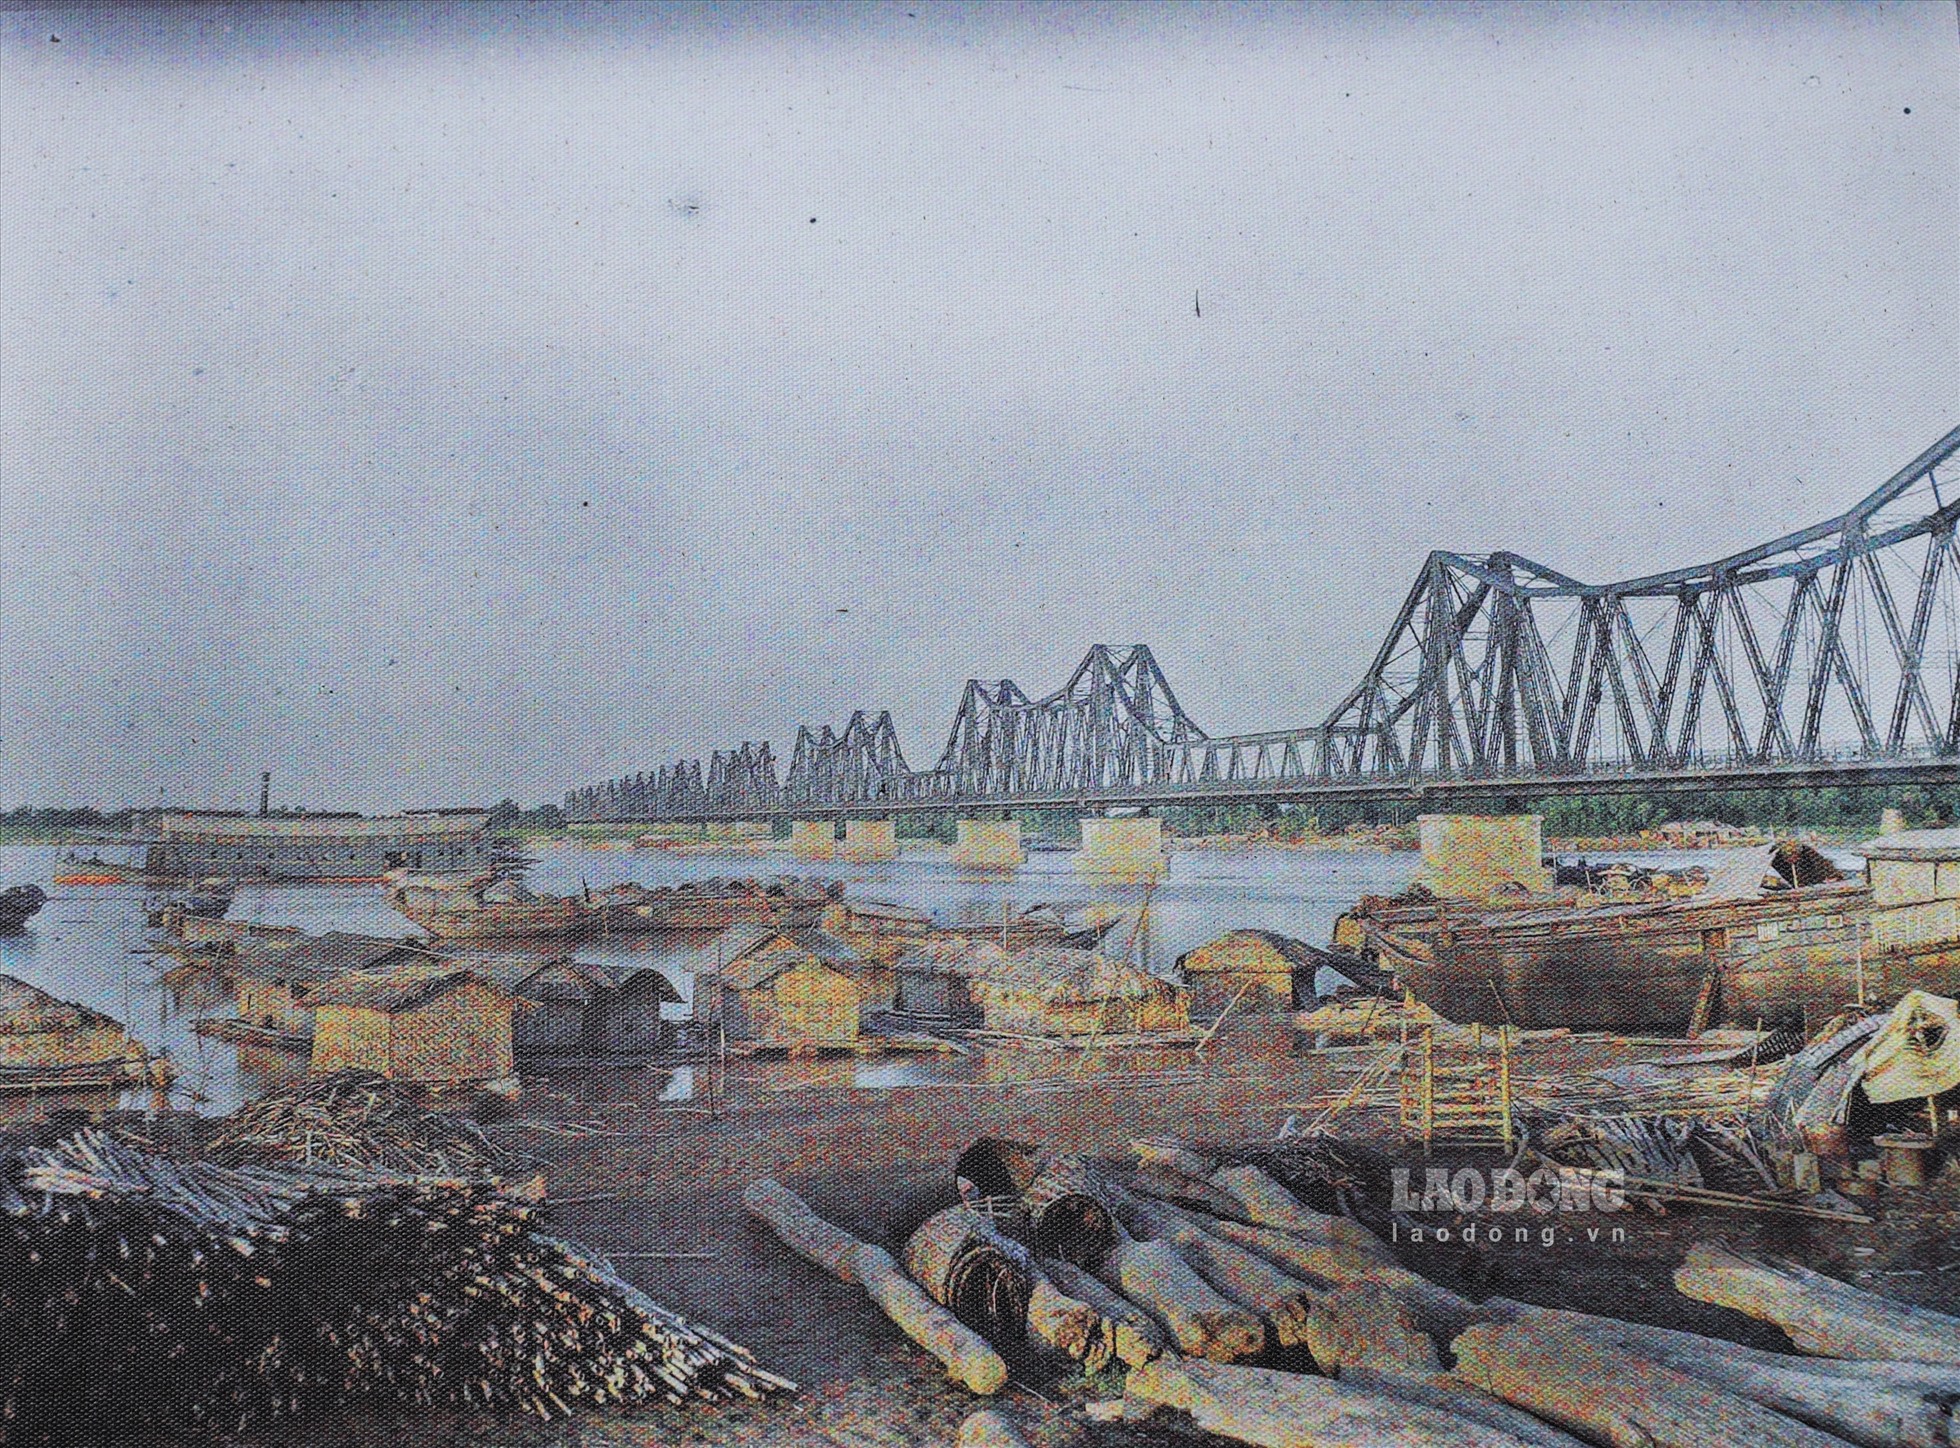 Cầu Long Biên qua sông Hồng cho thấy sự nhộn nhịp của giao thông đường thủy, khi bãi sông chân cầu được dùng làm nơi tập kết các loại hàng hóa. Cầu Long Biên từng là cầu dài nhất châu Á đầu thế kỷ 20.